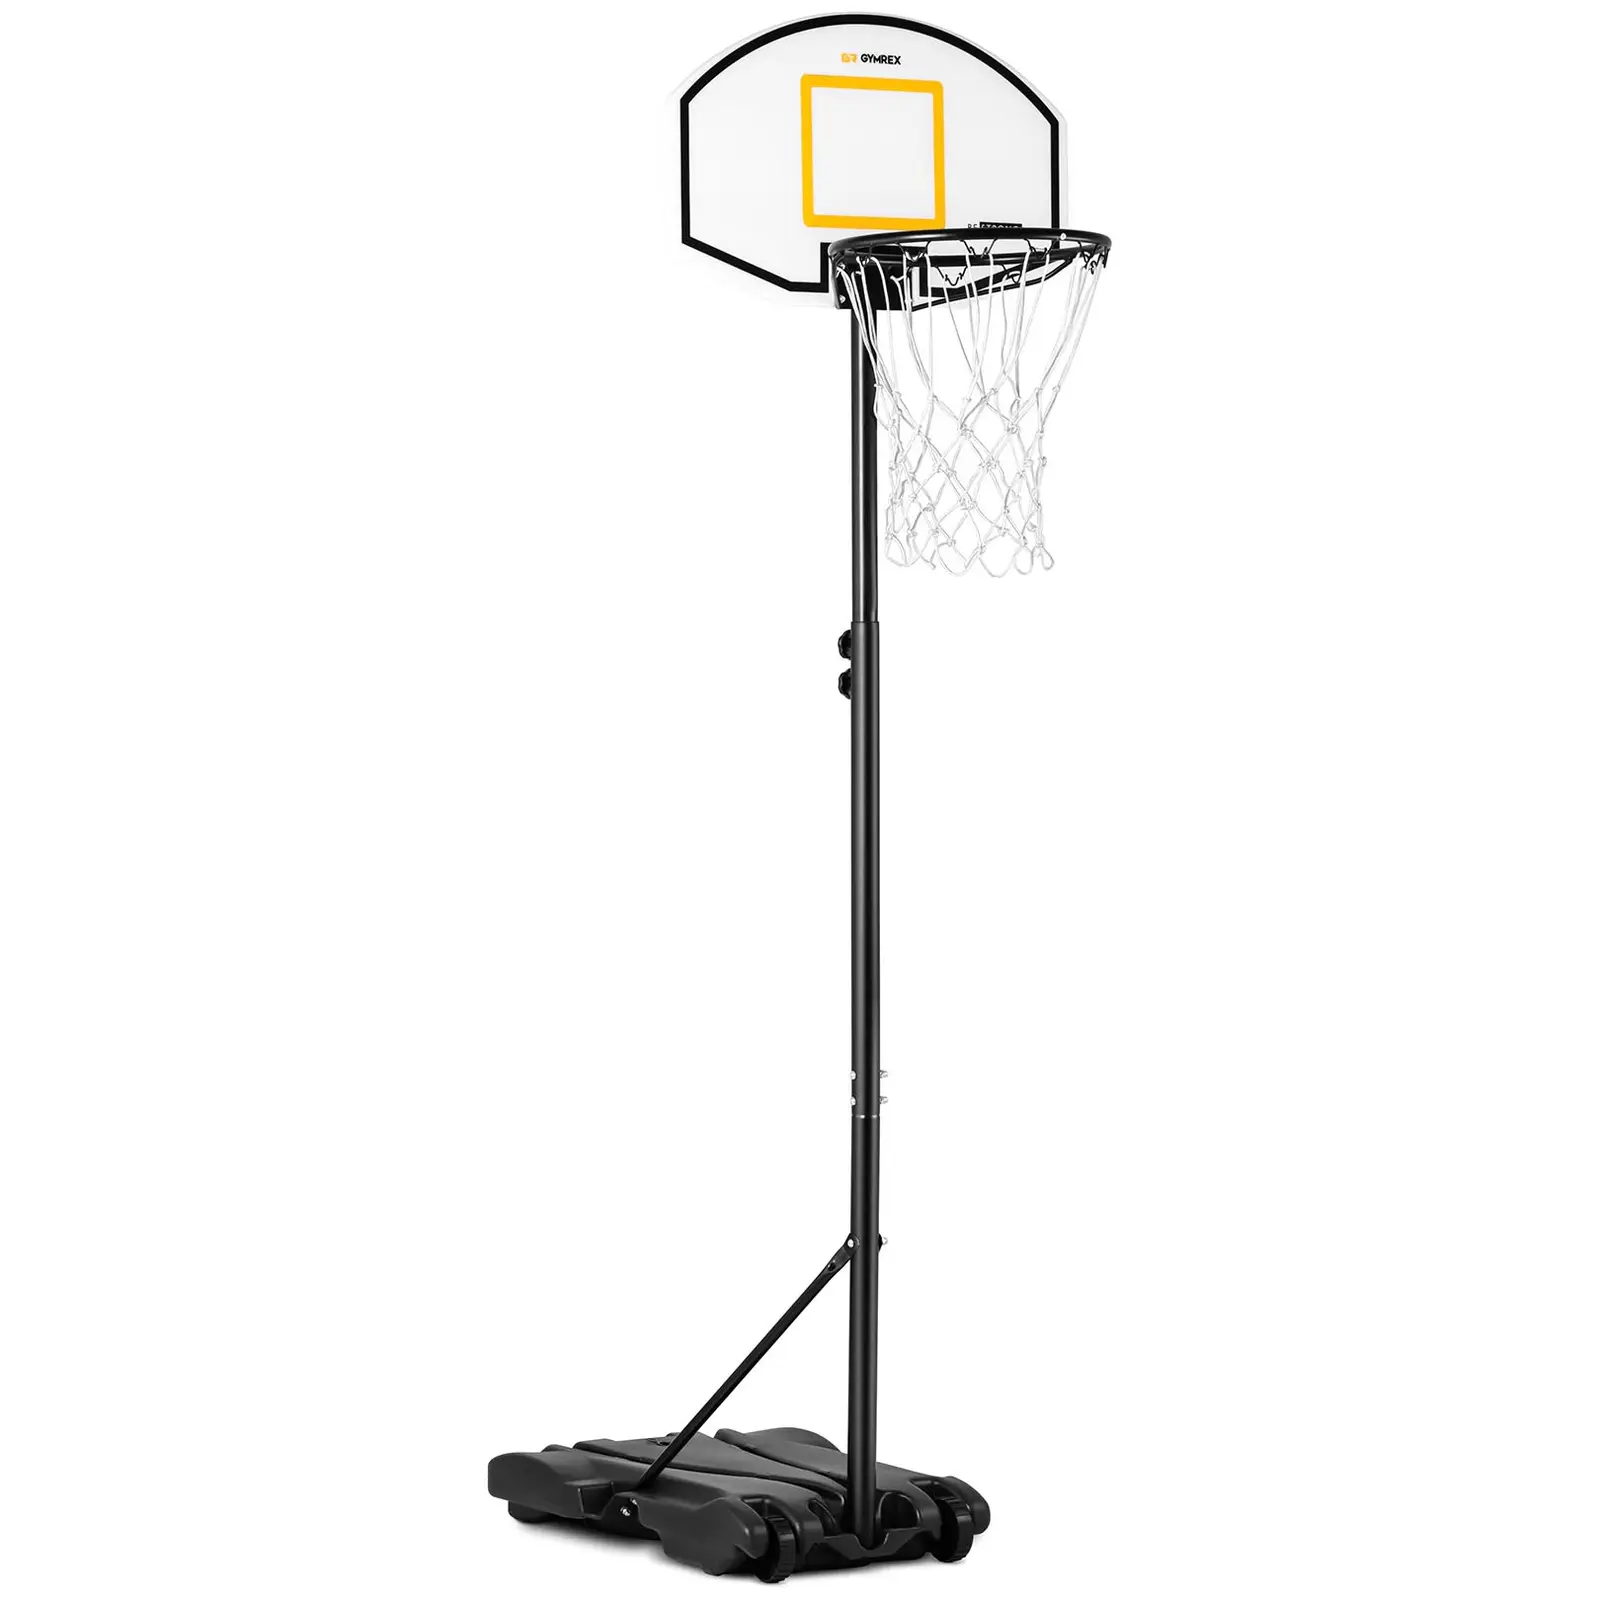 Vaikiškas krepšinio stovas - reguliuojamo aukščio - nuo 178 iki 205 cm